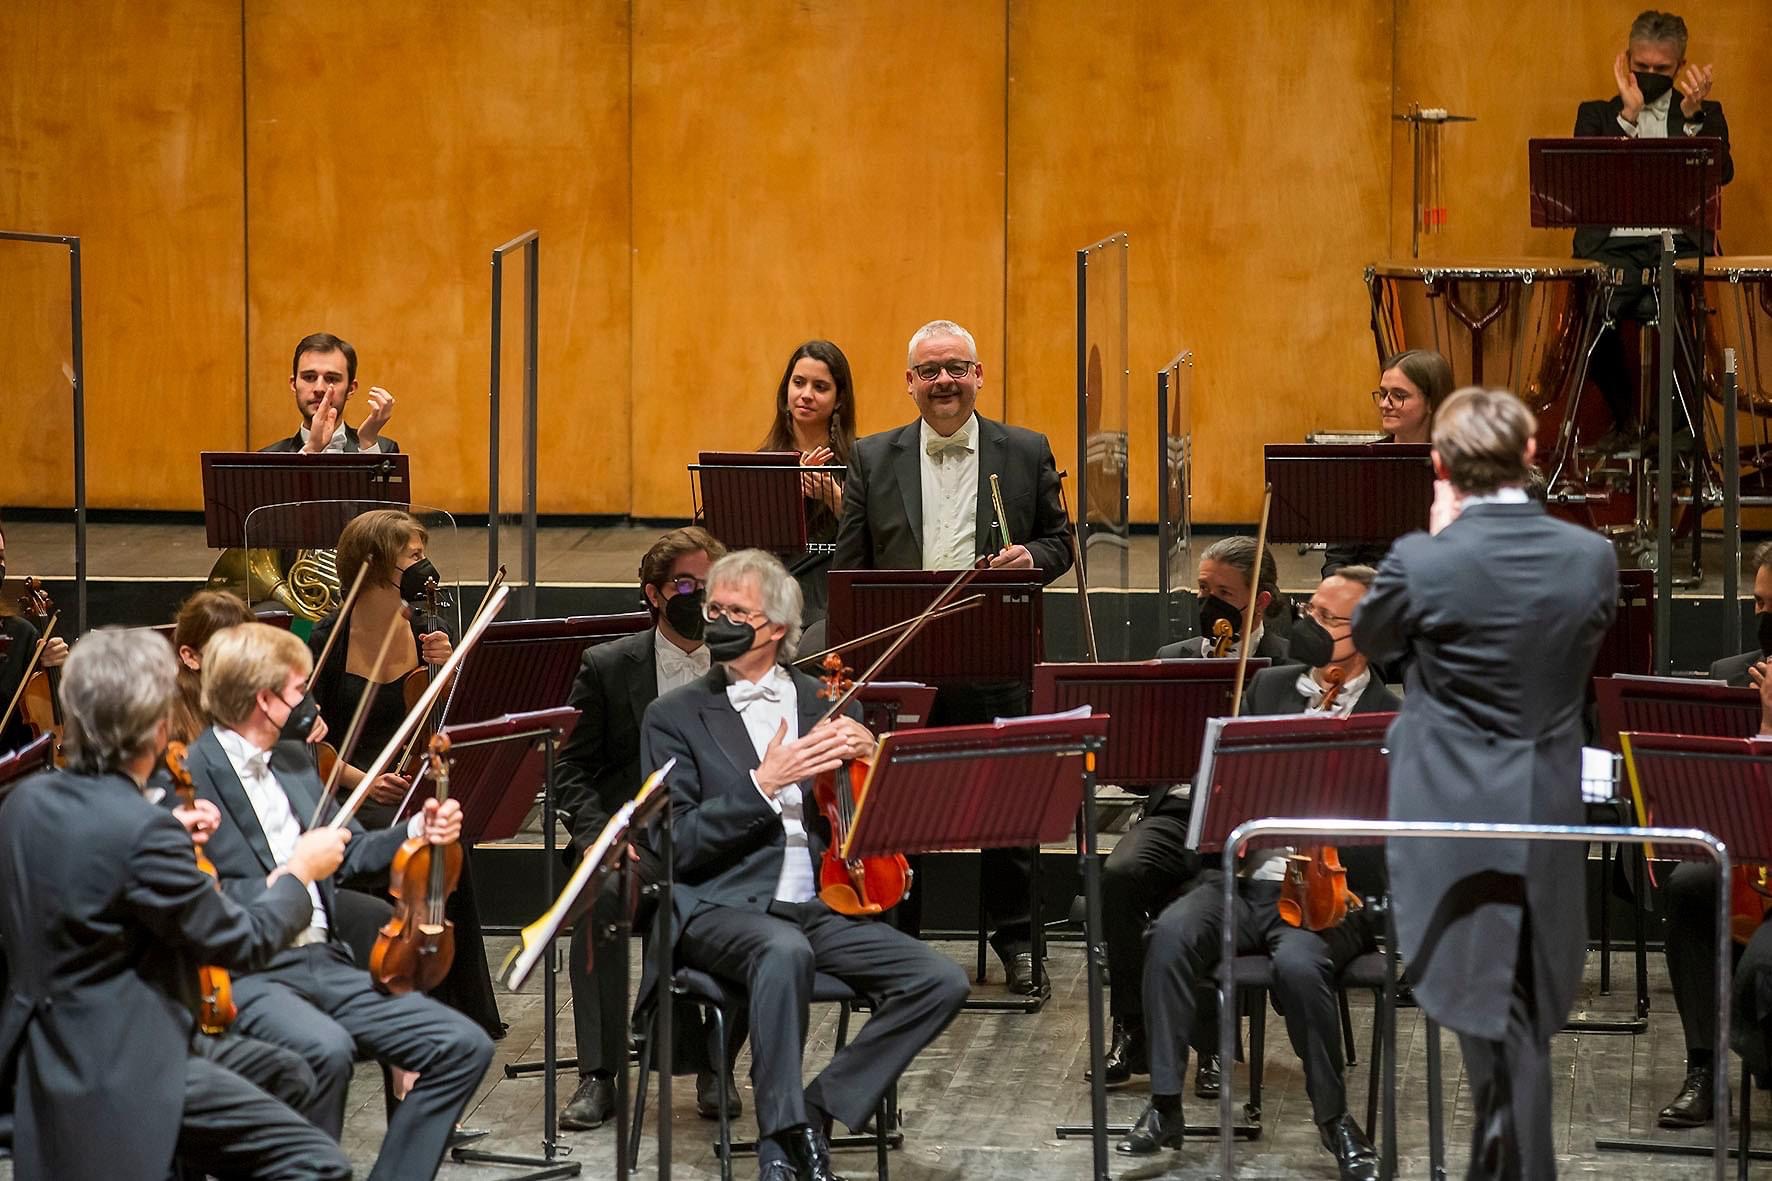 Alessandro visintini in pensione dall’orchestra haydn